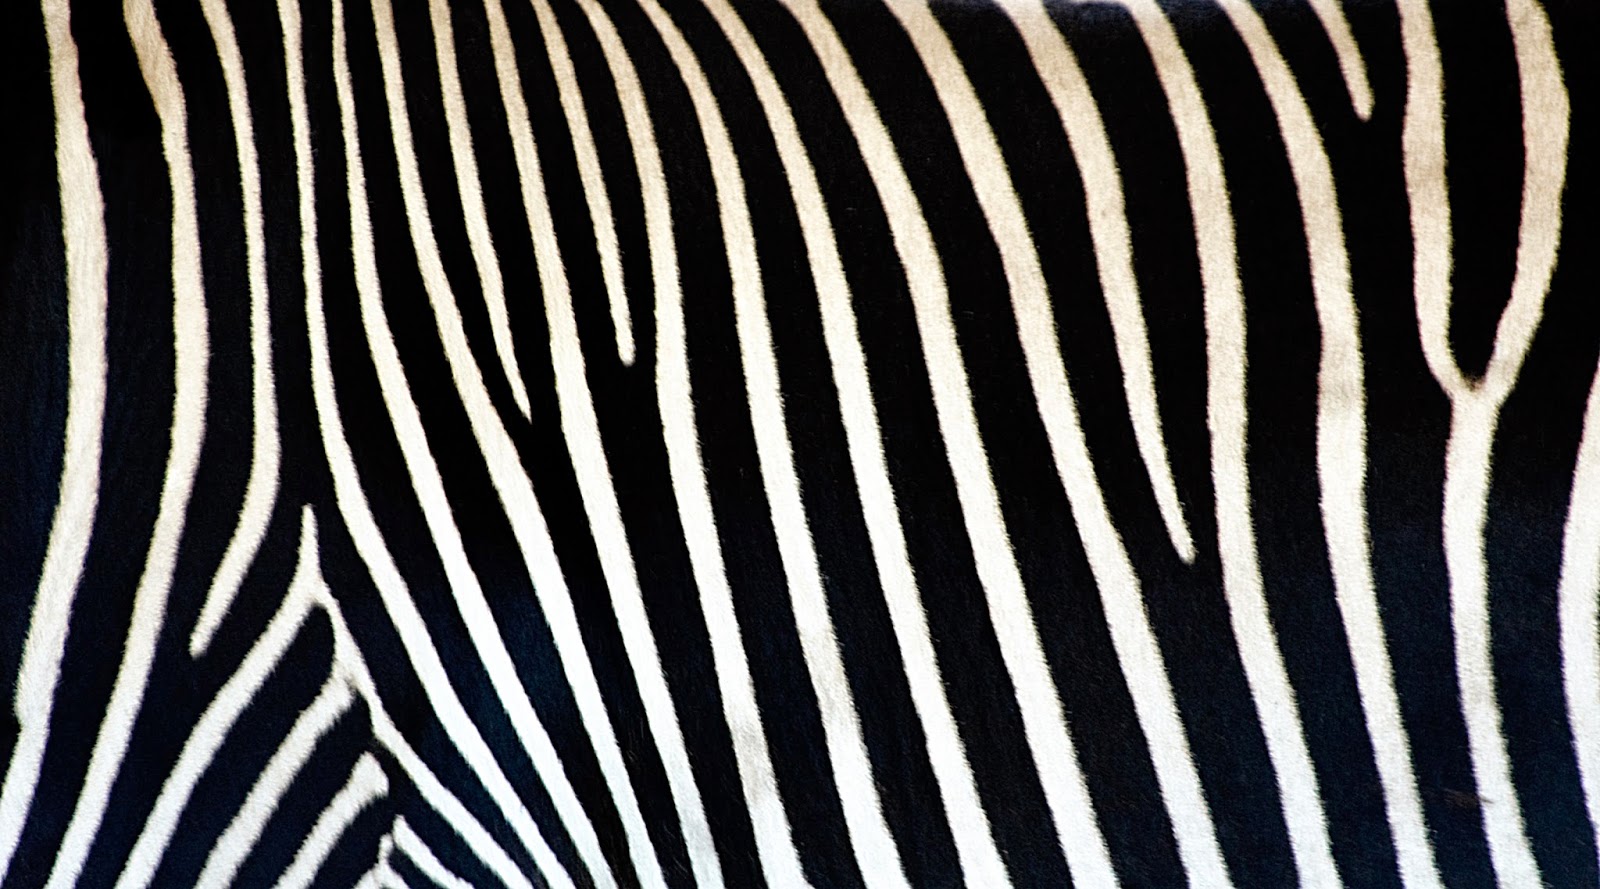 Zebra African Wildlife Backgrounds - Wallpapers